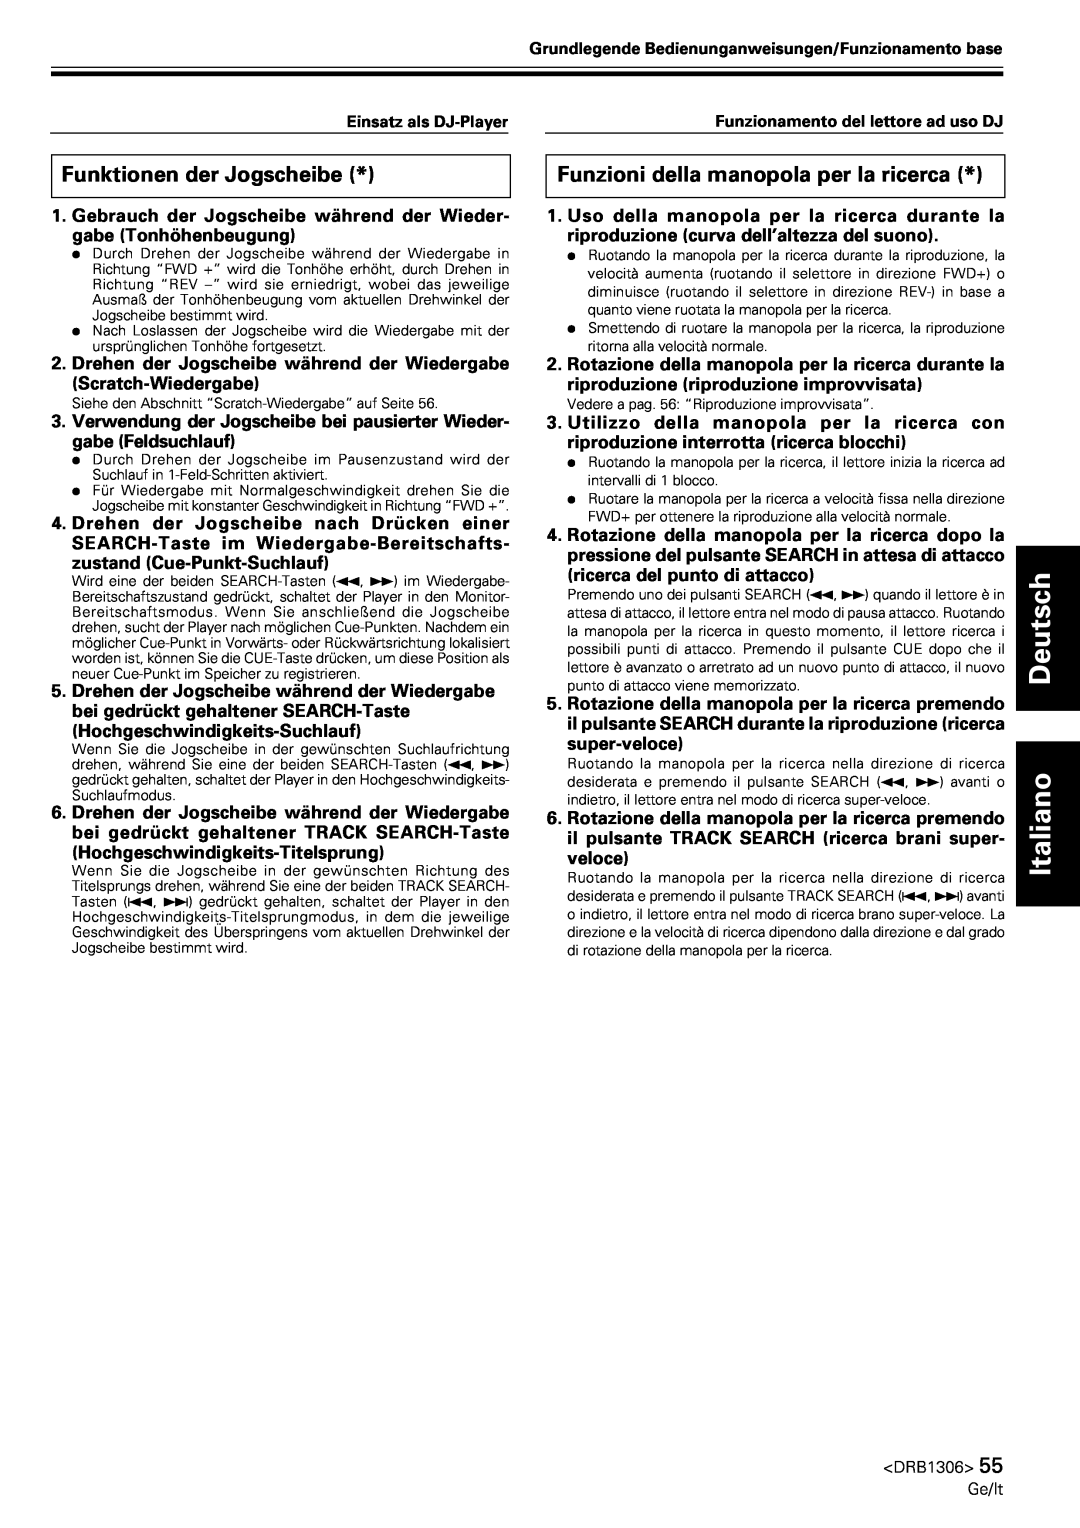 Pioneer CMX-3000 operating instructions Funktionen der Jogscheibe, Funzioni della manopola per la ricerca, Deutsch Italiano 